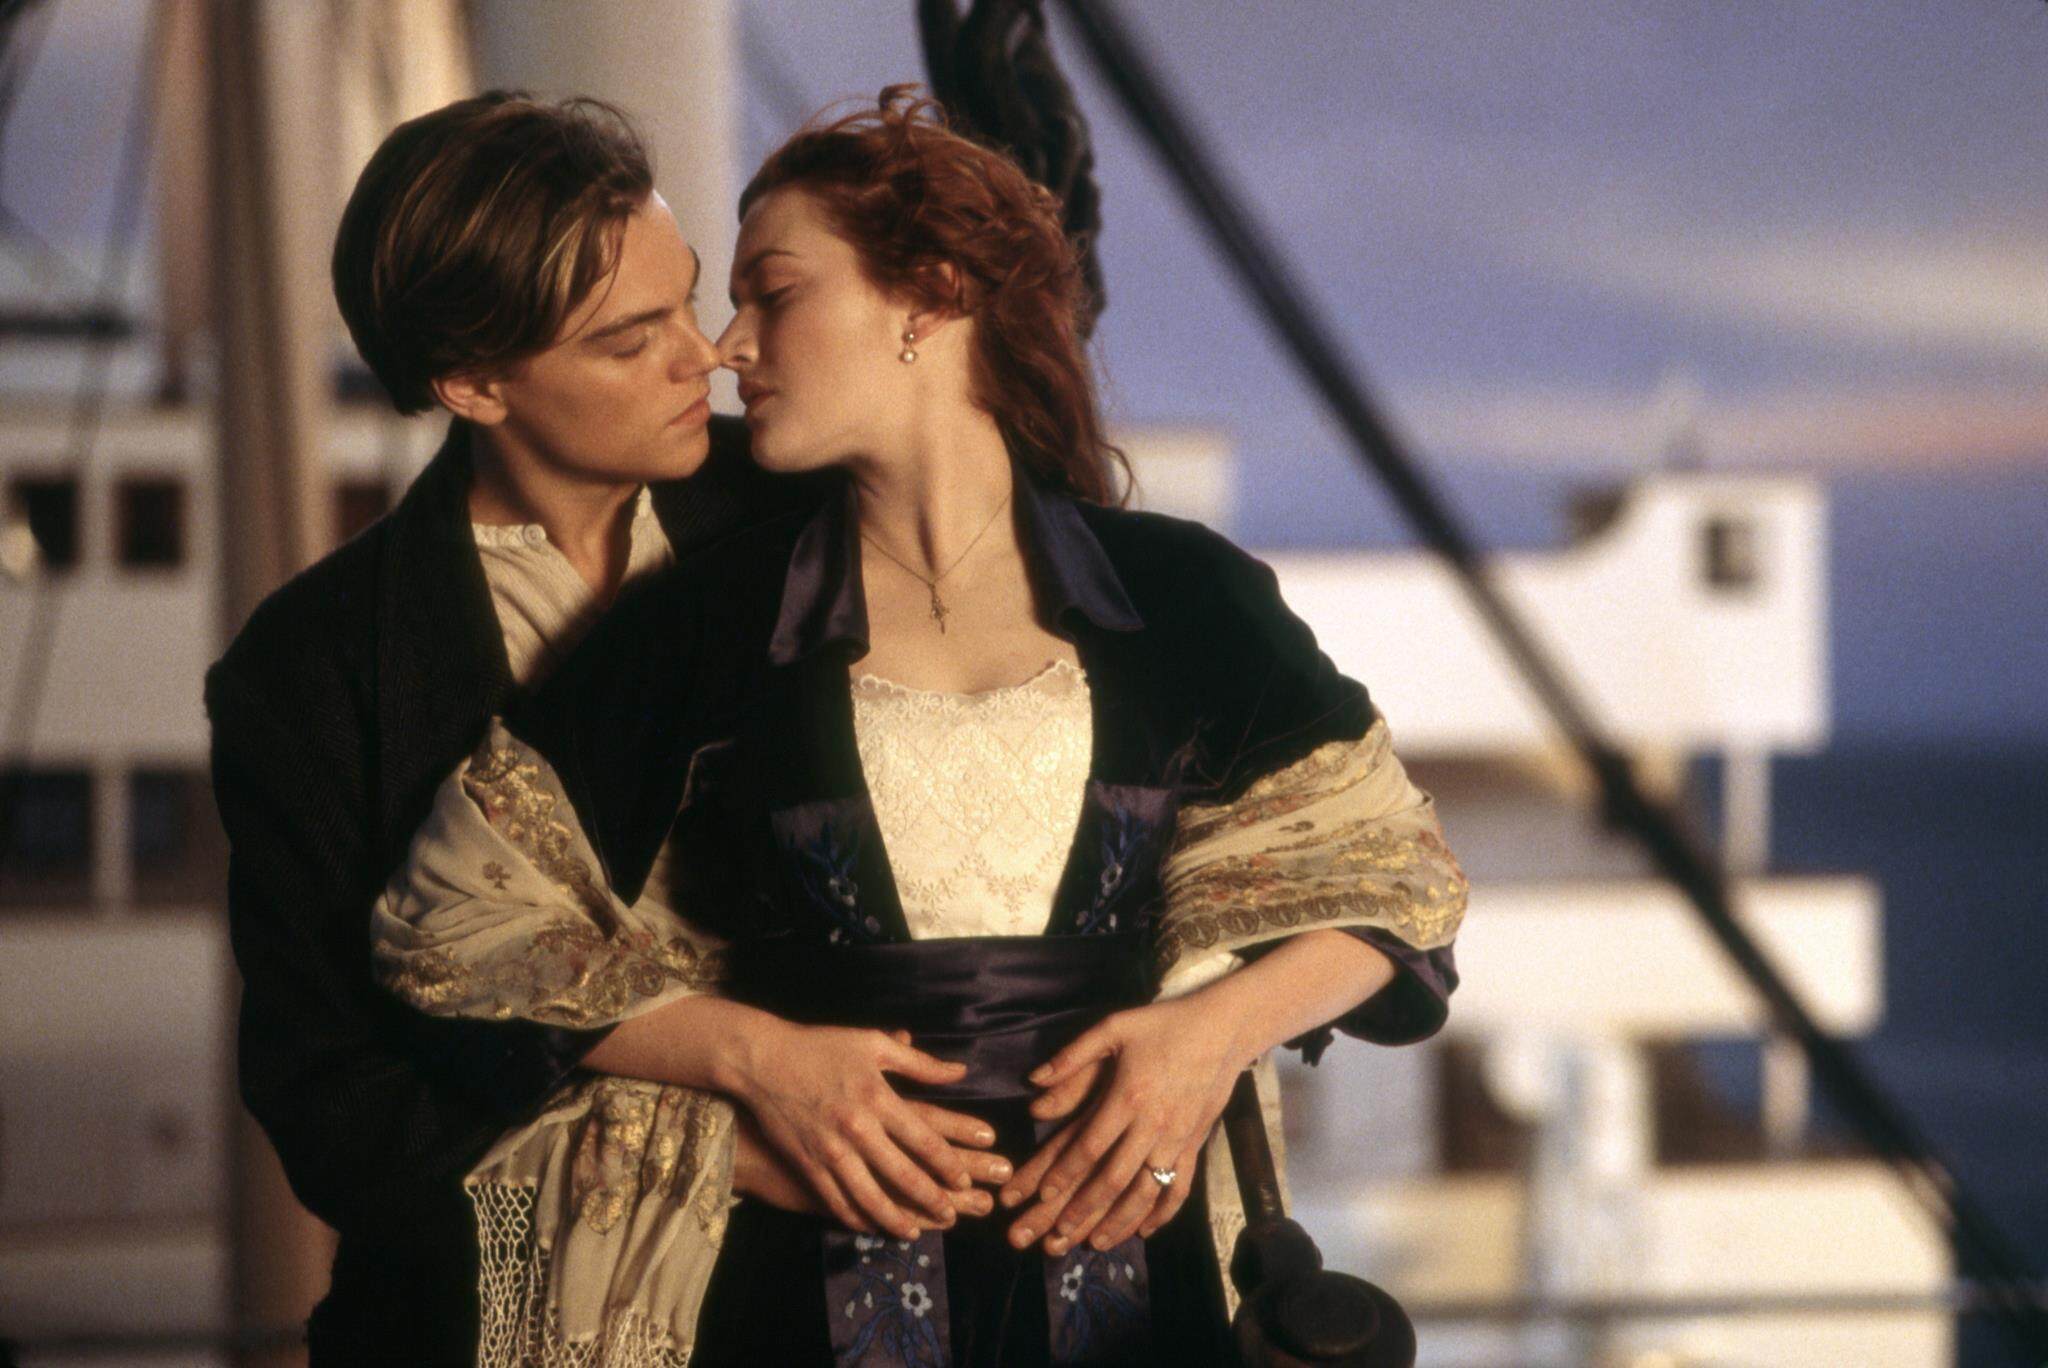 《鐵達尼》25周年重映｜關於Titanic的10件事: 里安納度曾拒演？My Heart Will Go On非主題